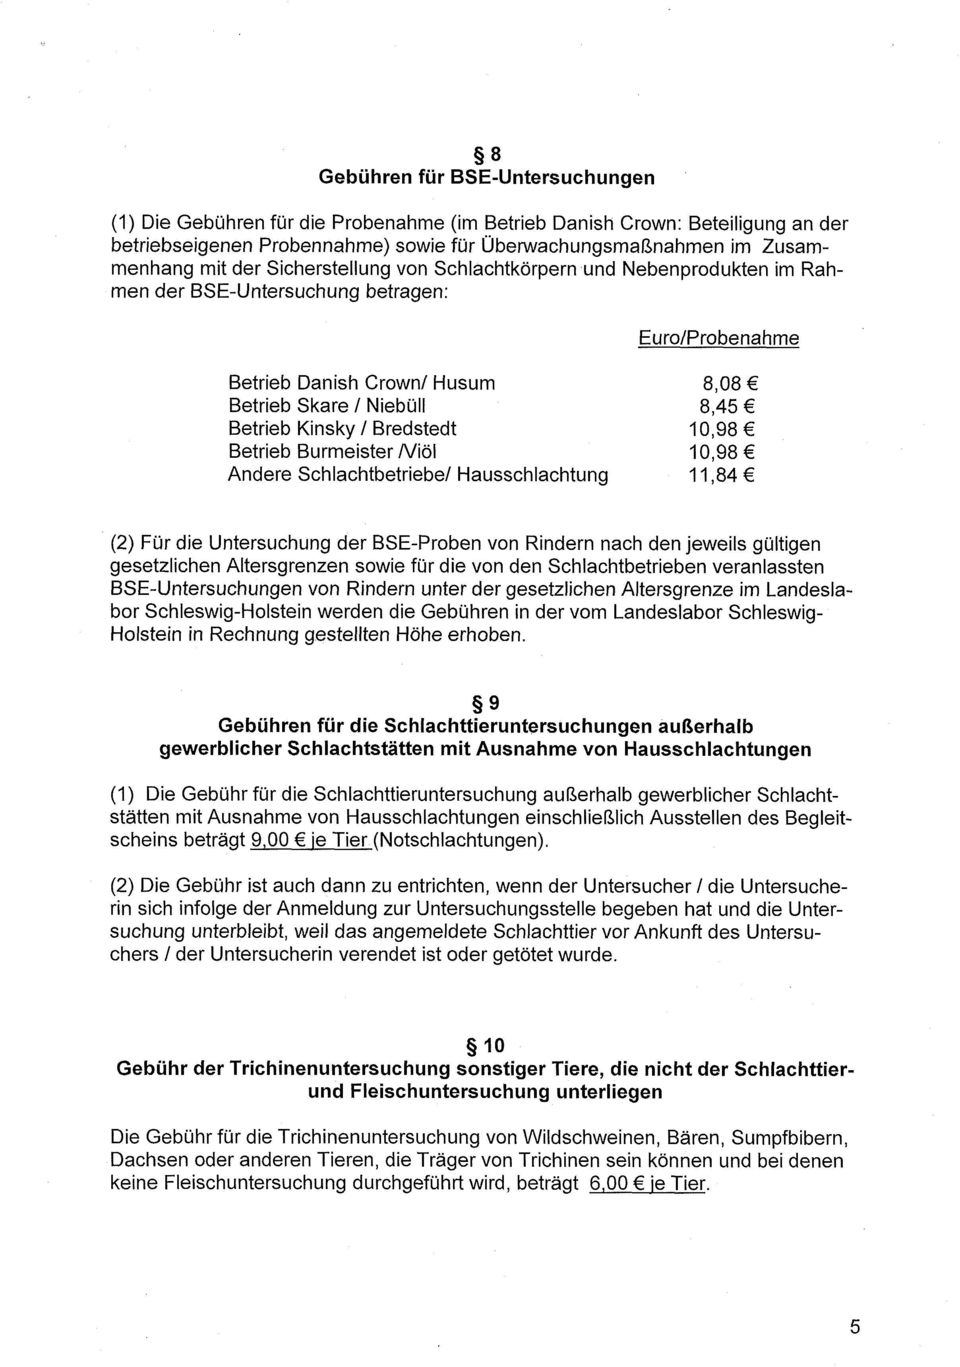 Bredstedt 10,98 Betrieb Burmeister A/iöl 10,98 Andere Schlachtbetriebe/ Hausschlachtung 11,84 (2) Für die Untersuchung der BSE-Proben von Rindern nach den jeweils gültigen gesetzlichen Altersgrenzen